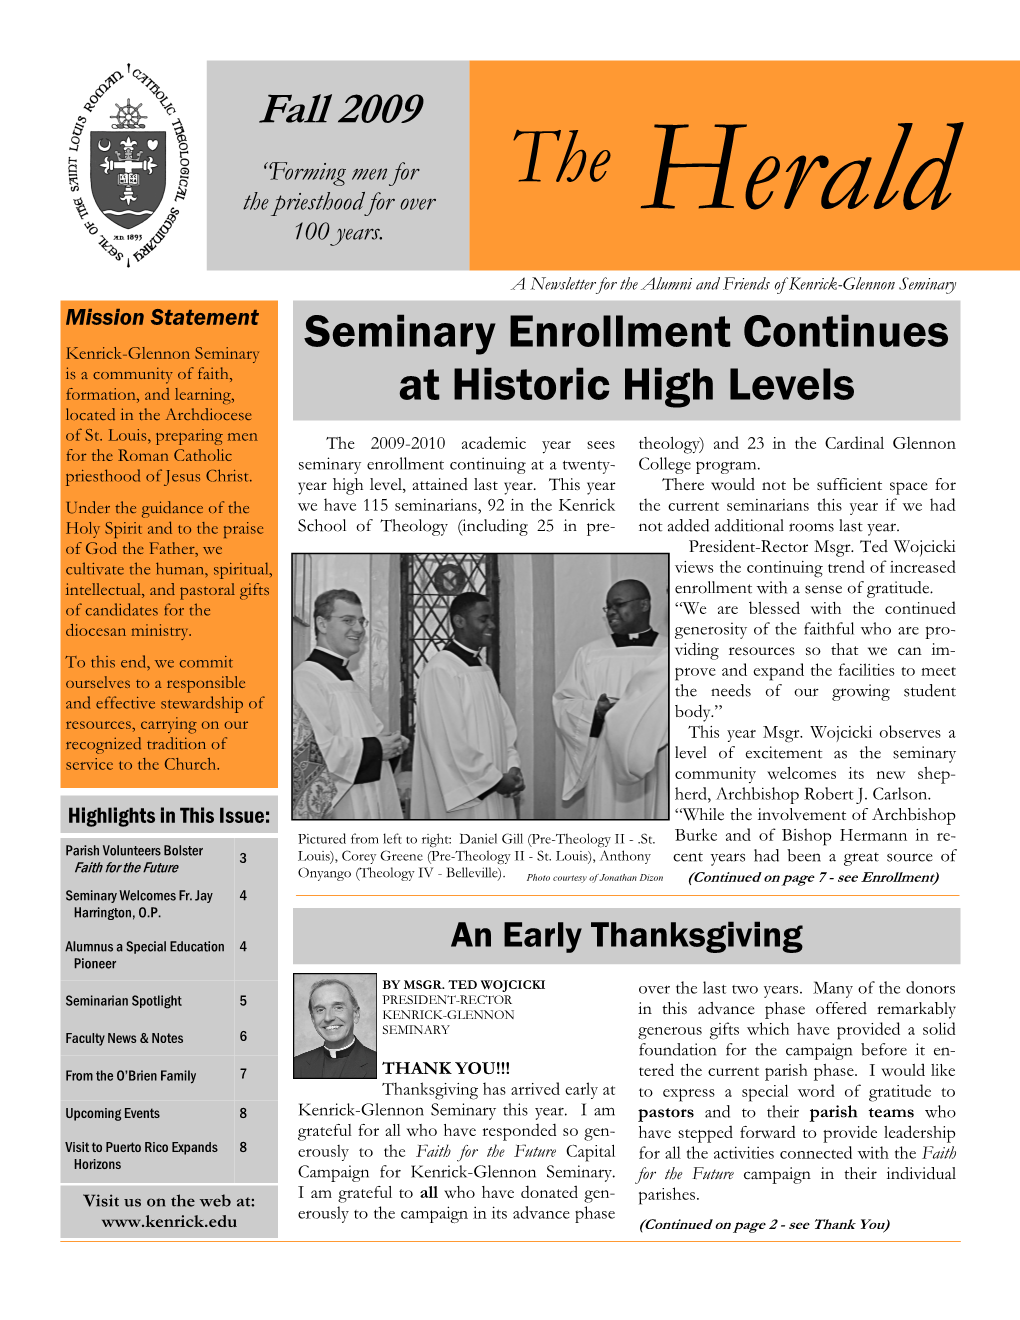 Fall 2009 – Newsletter